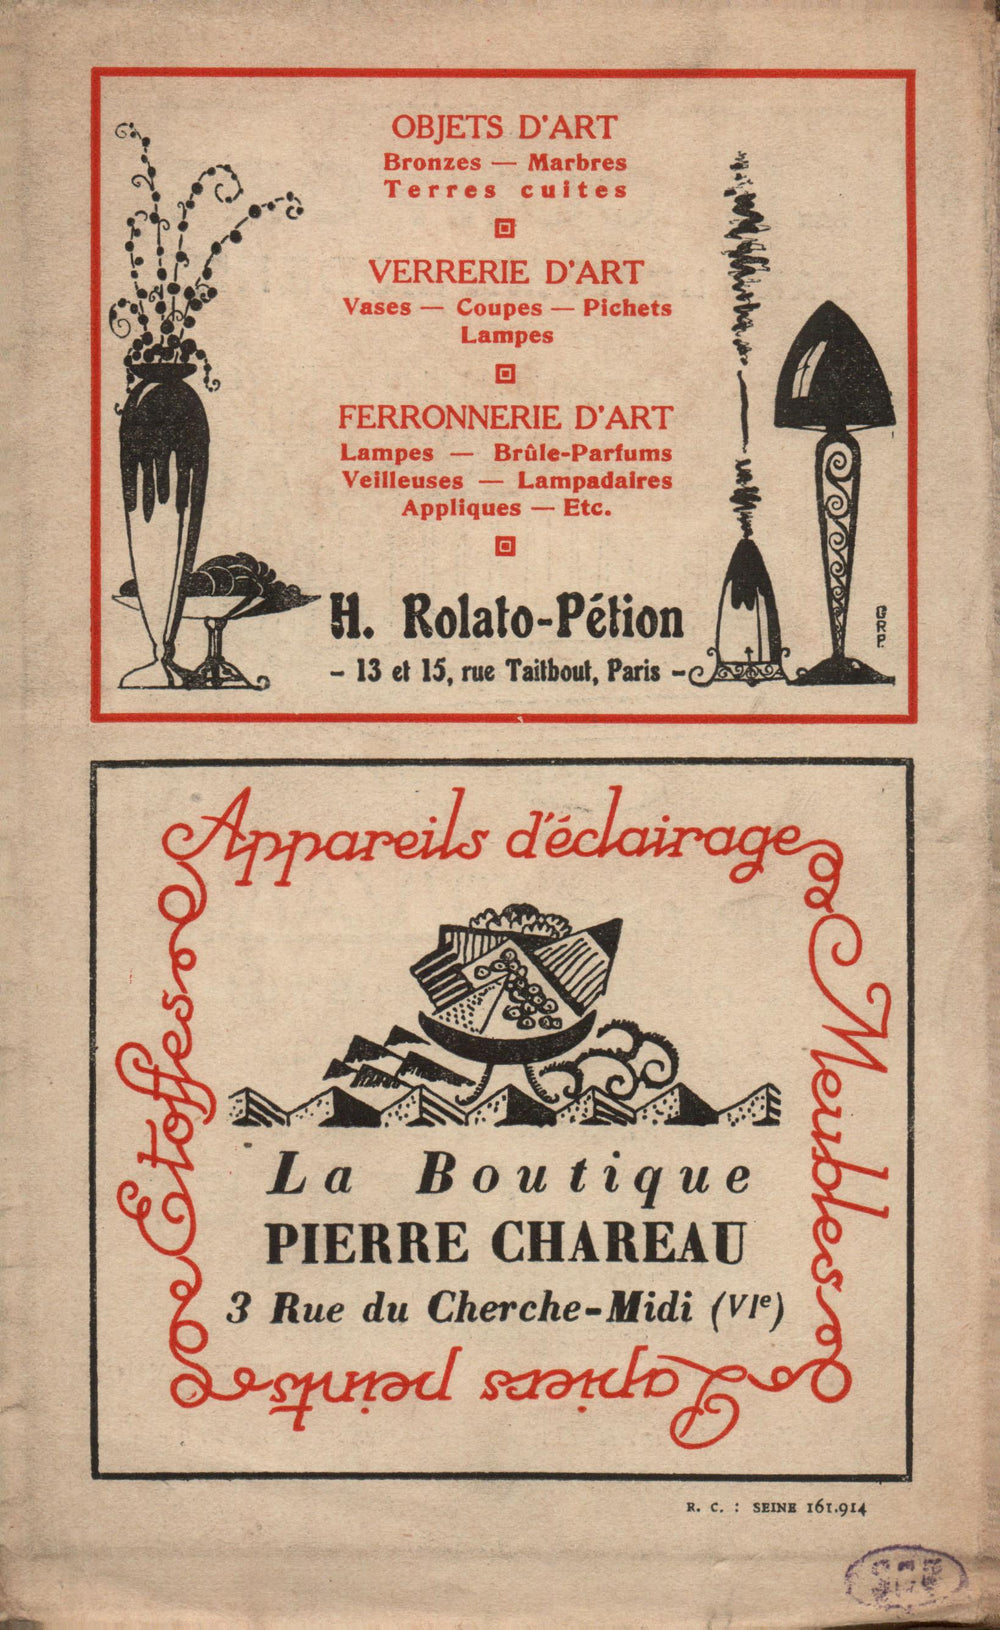 La Nouvelle Revue Française N' 136 (Janvier 1925)